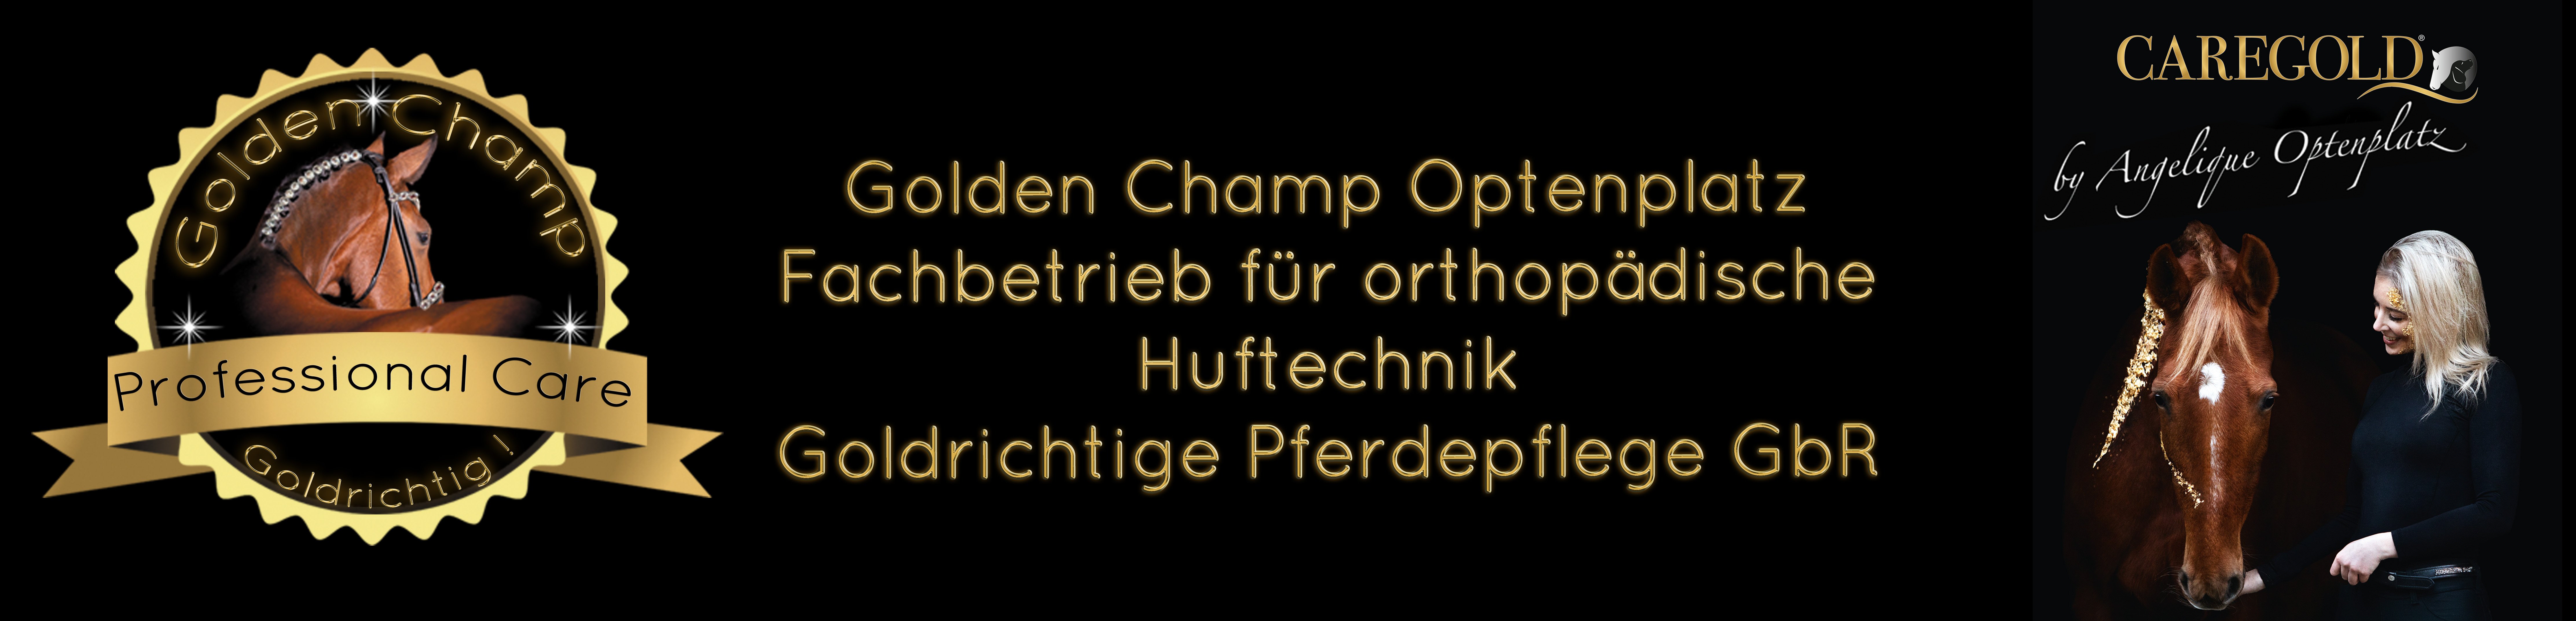 Golden Champ Optenplatz